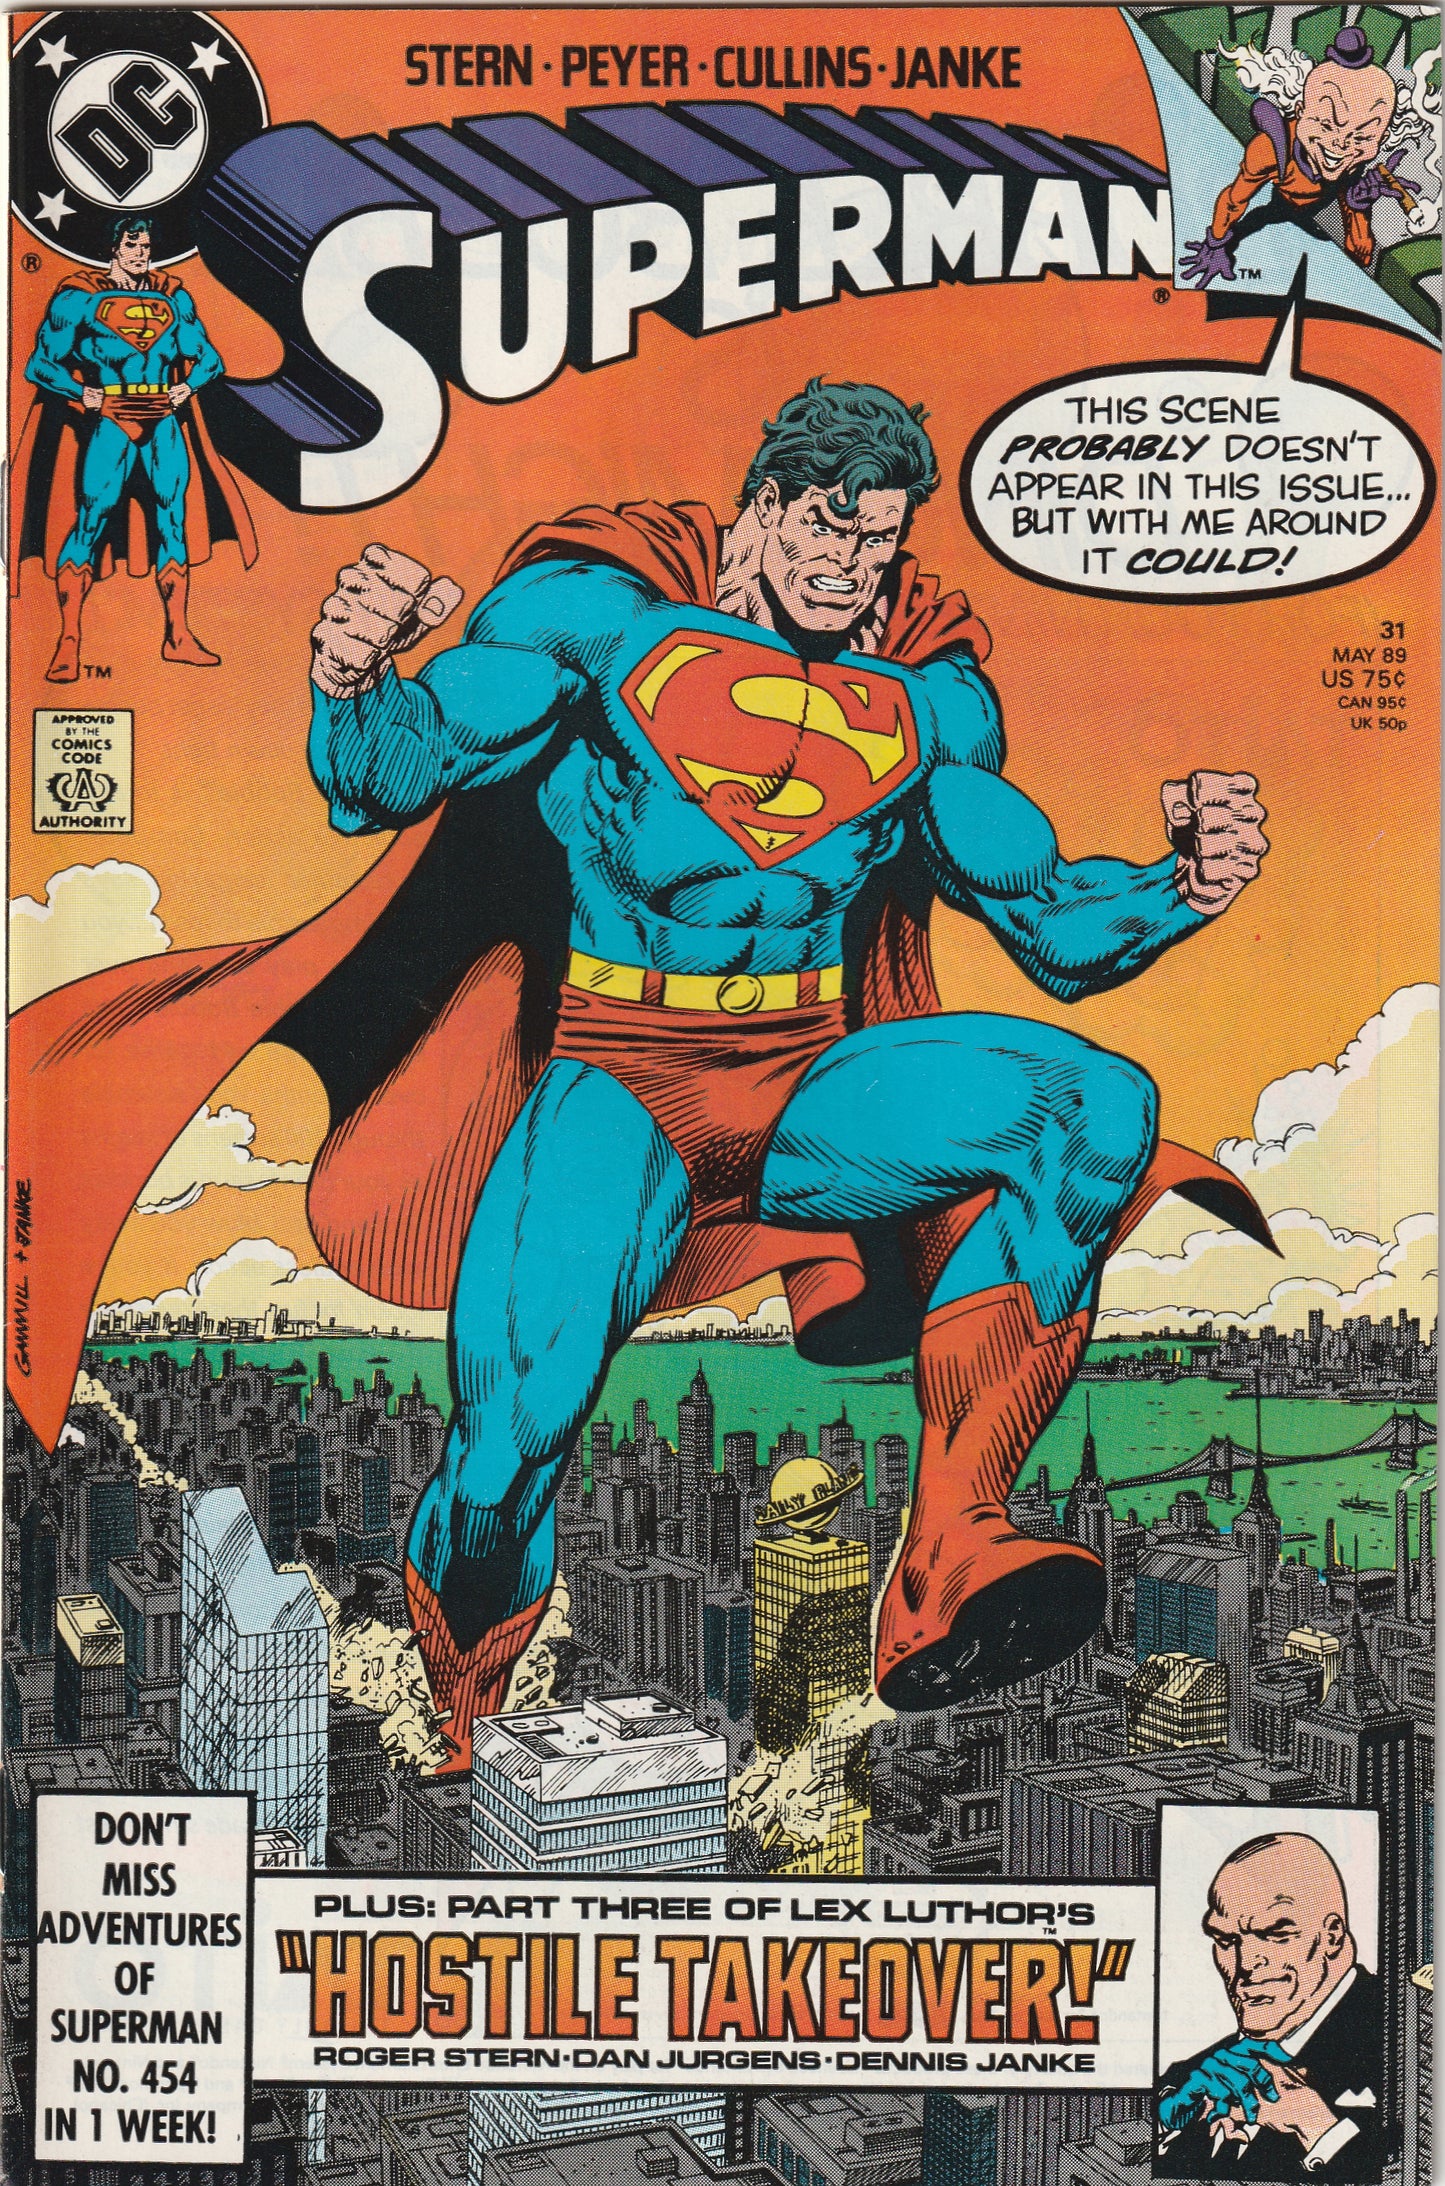 Superman #31 (Vol 2, 1989)